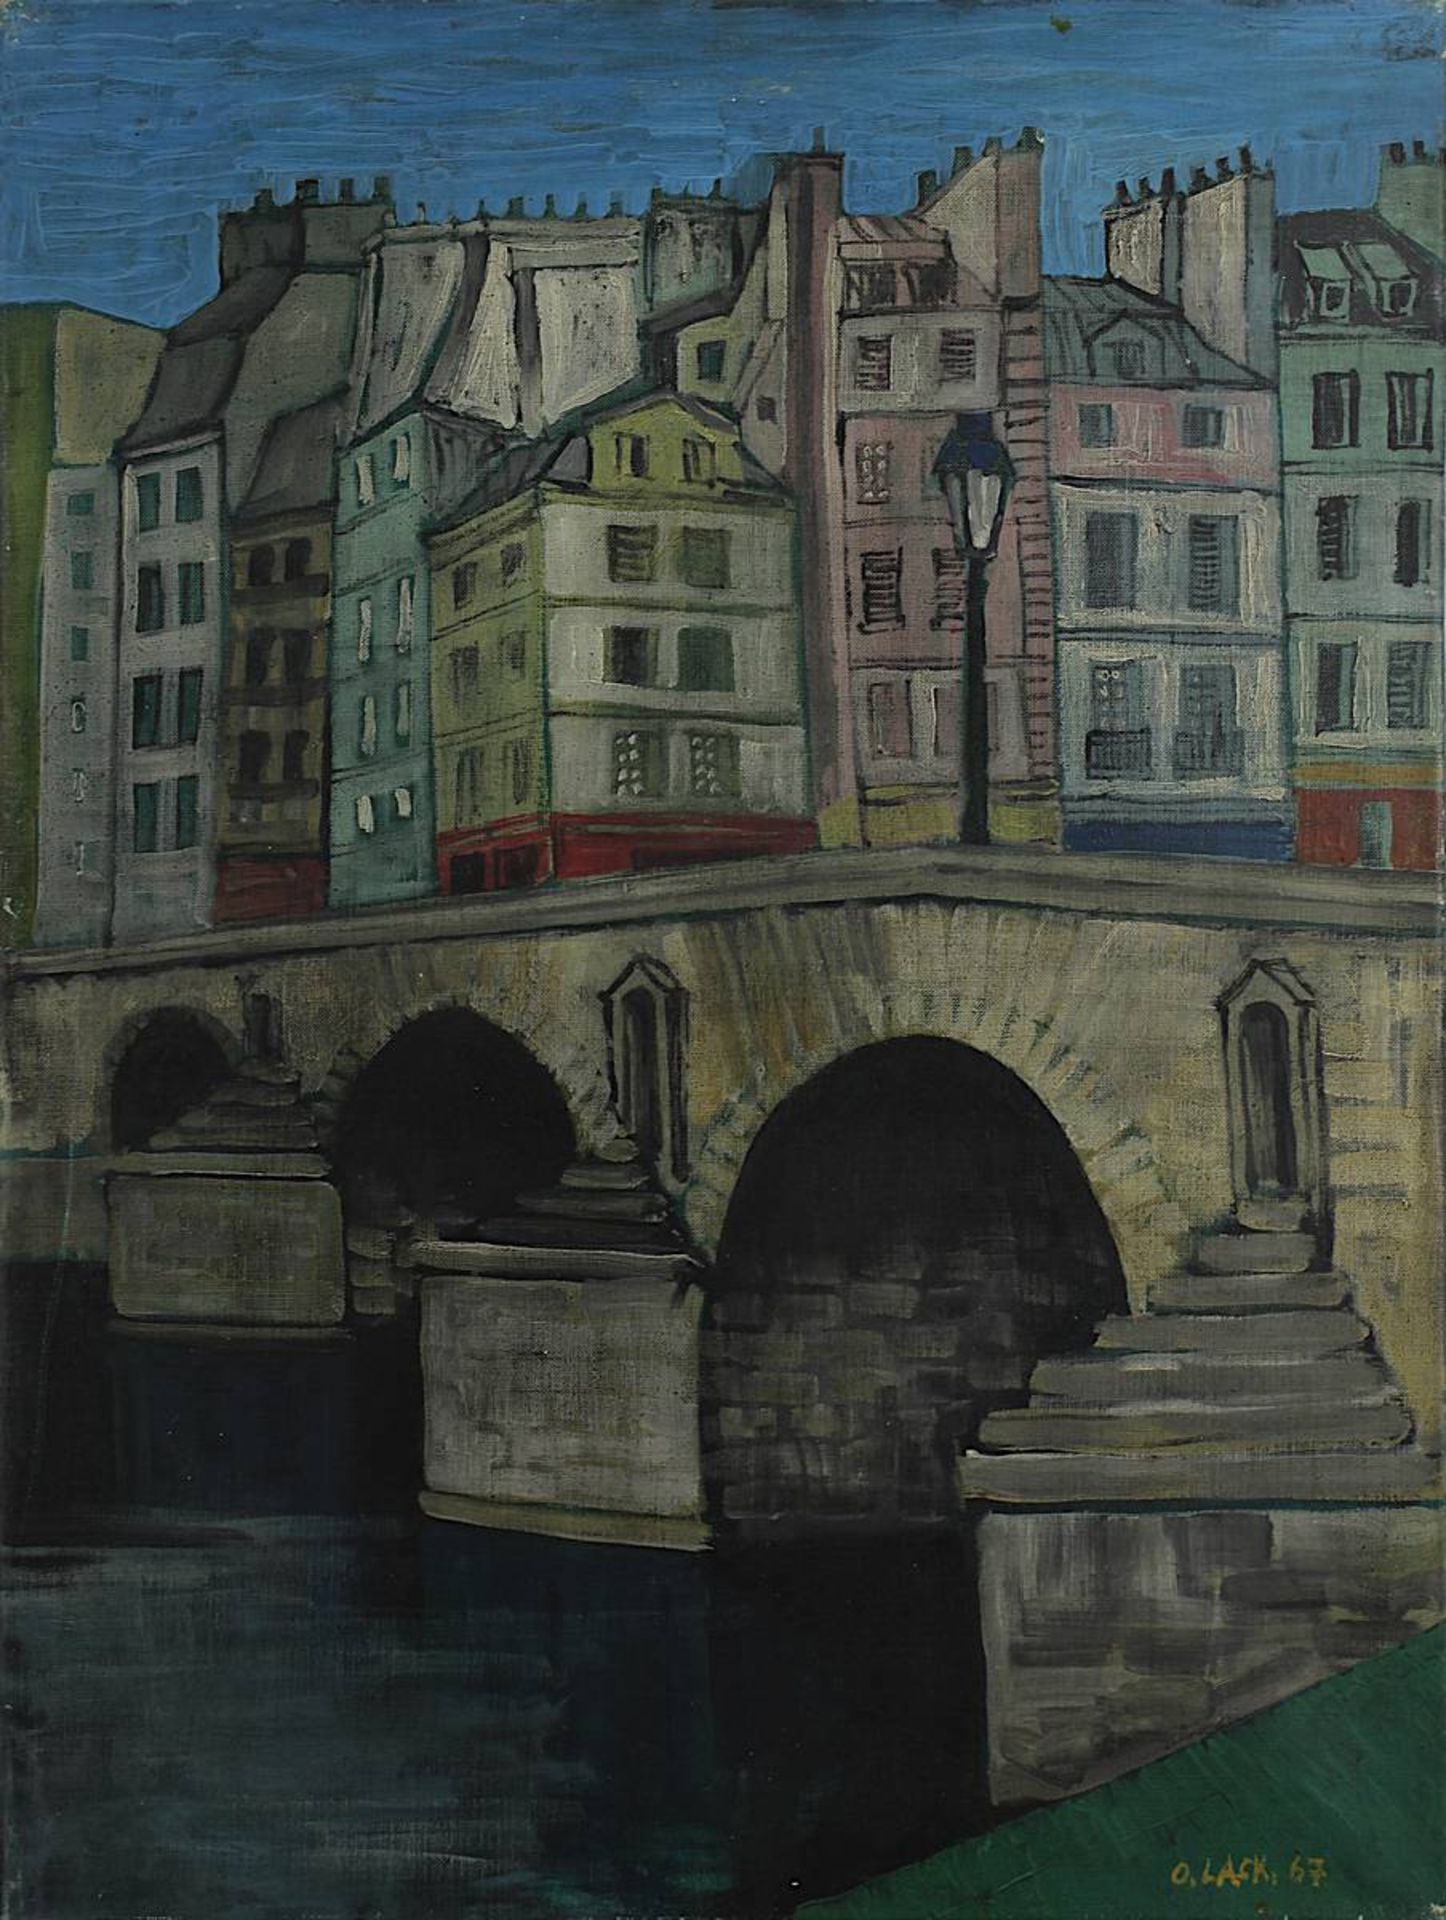 Lackenmacher, Otto (Saarbrücken 1927 - 1988 Saarbrücken), Bogenbrücke mit Häuserzug in Paris, Öl auf